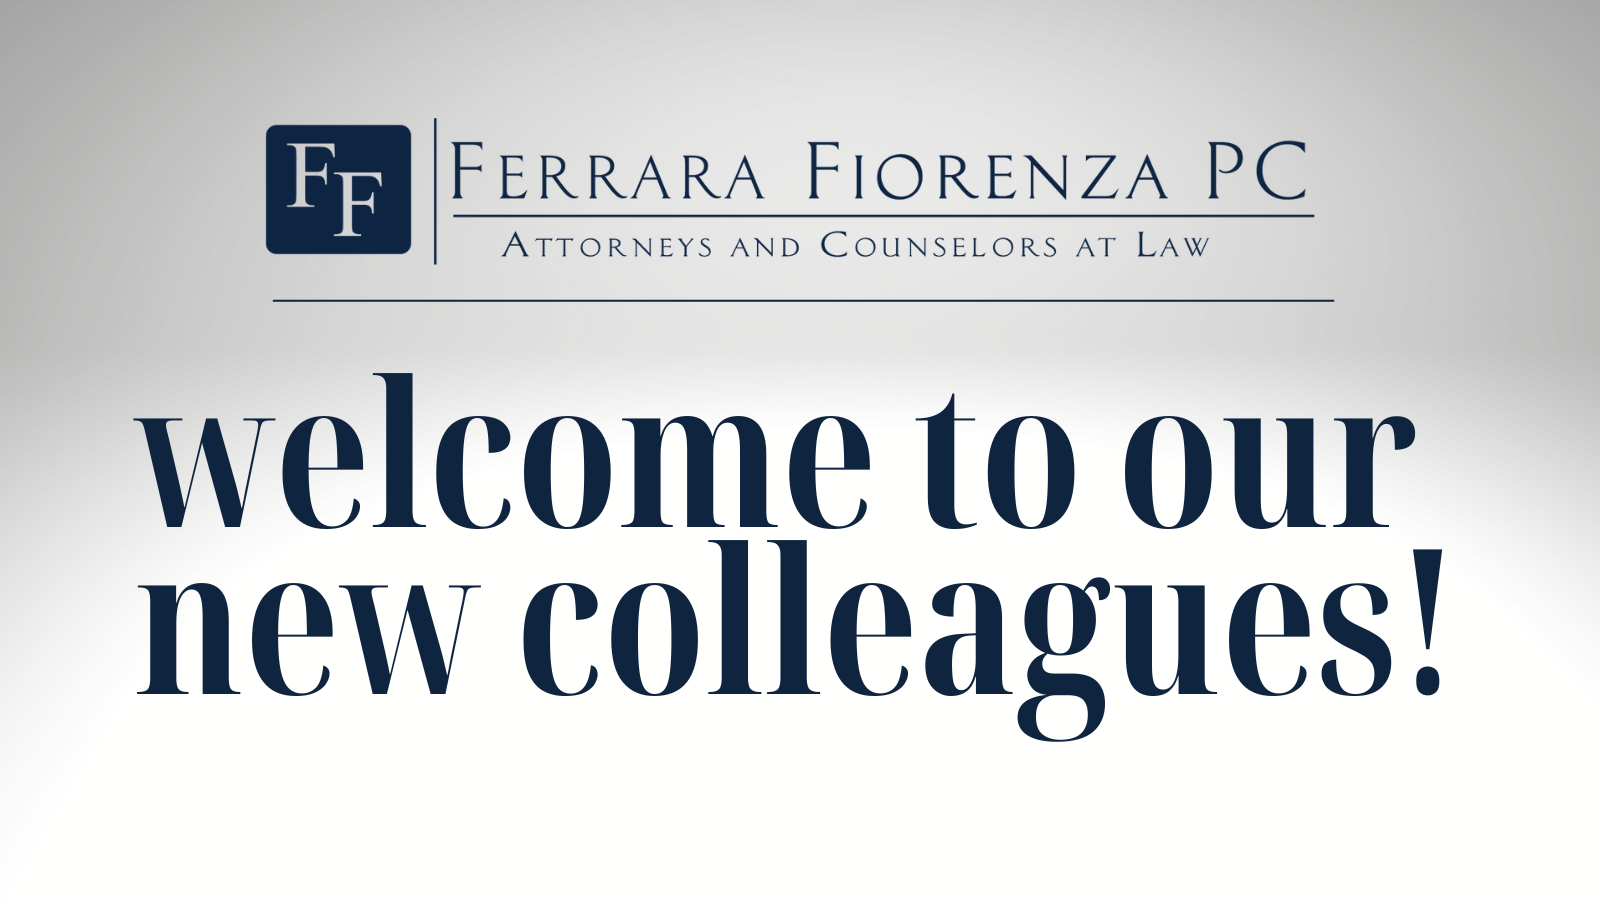 Ferrara Fiorenza PC Welcomes the Addition of Attorneys and Staff from Binghamton-Based Hogan, Sarzynski, Lynch, DeWind & Gregory, LLP 